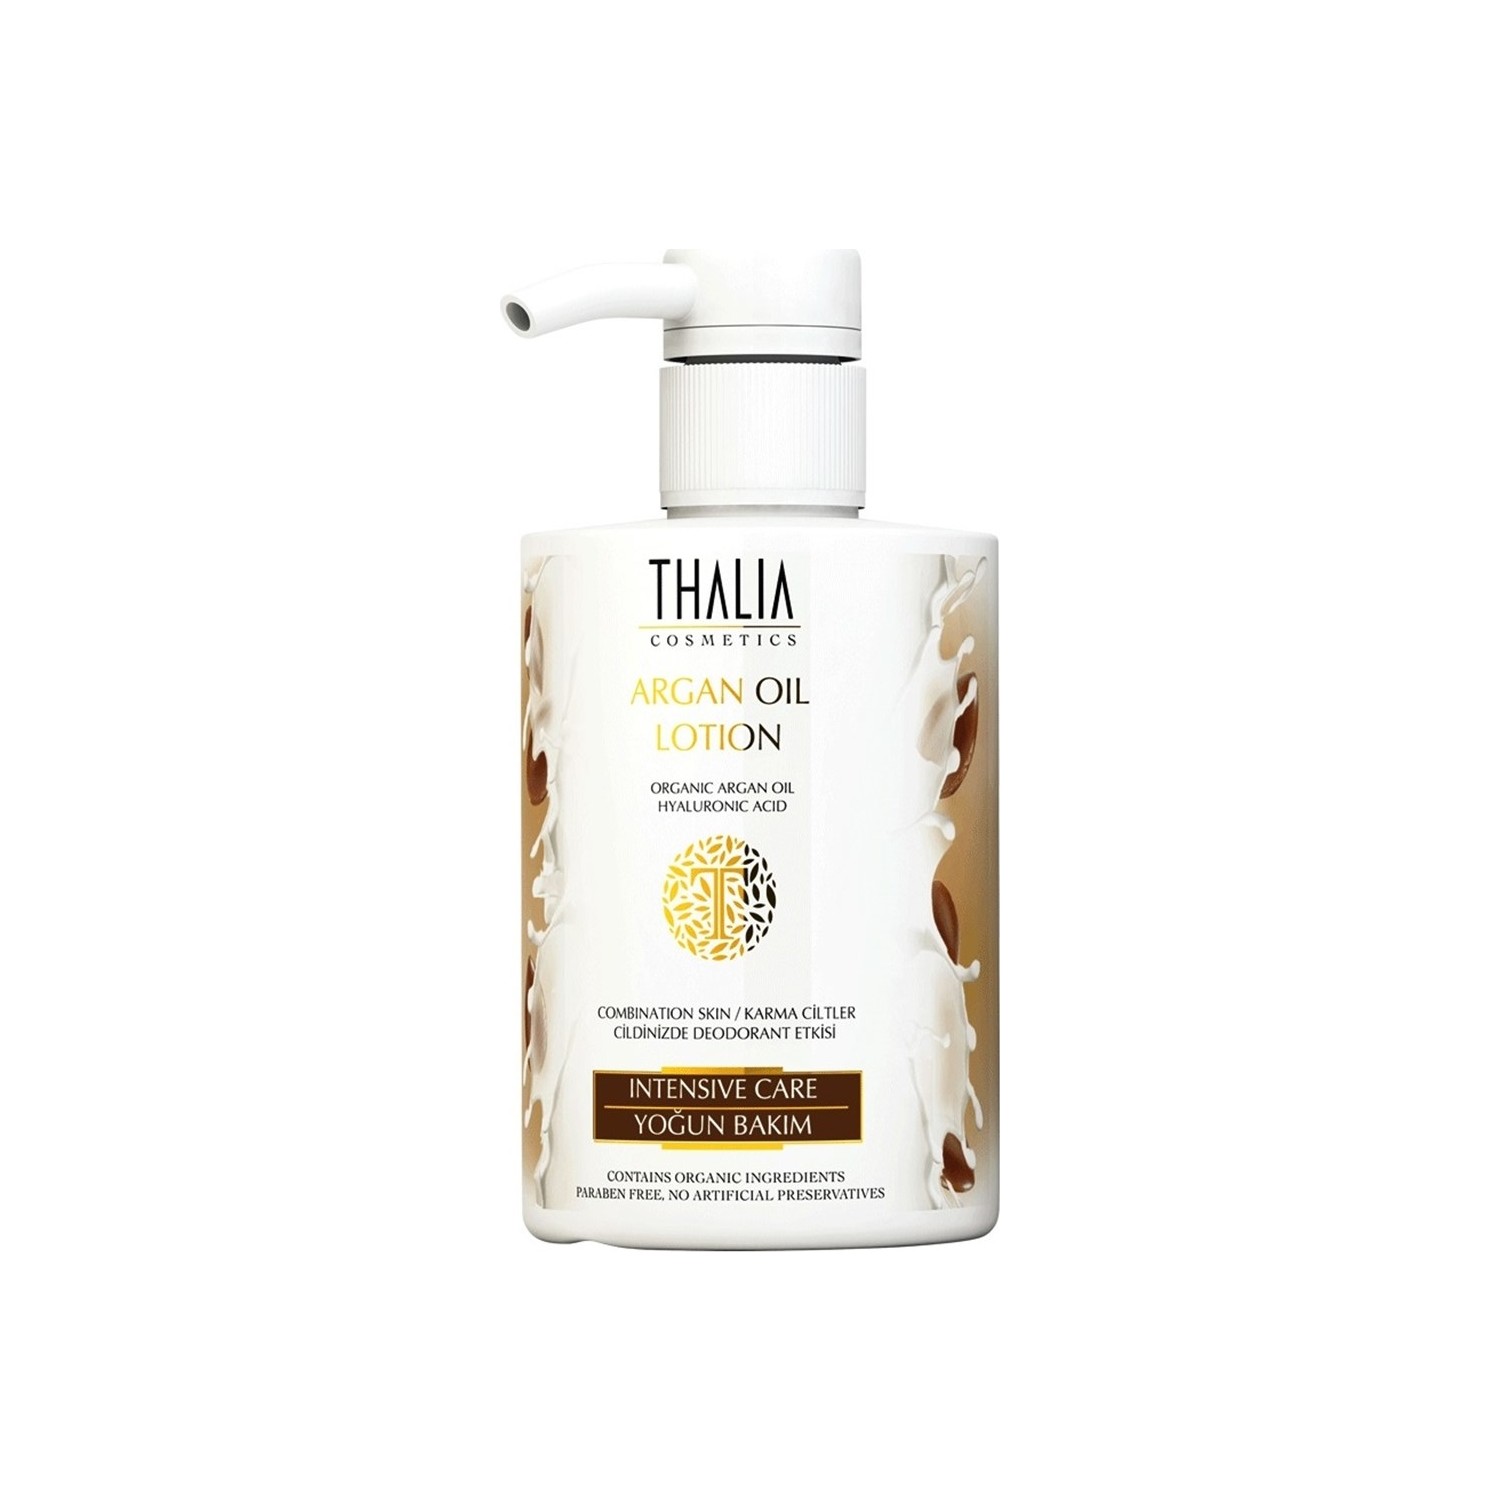 Лосьон для интенсивного ухода Thalia с органическим аргановым маслом и гиалуроновой кислотой, 300 мл cetaphil увлажняющий лосьон на каждый день с гиалуроновой кислотой 88 мл